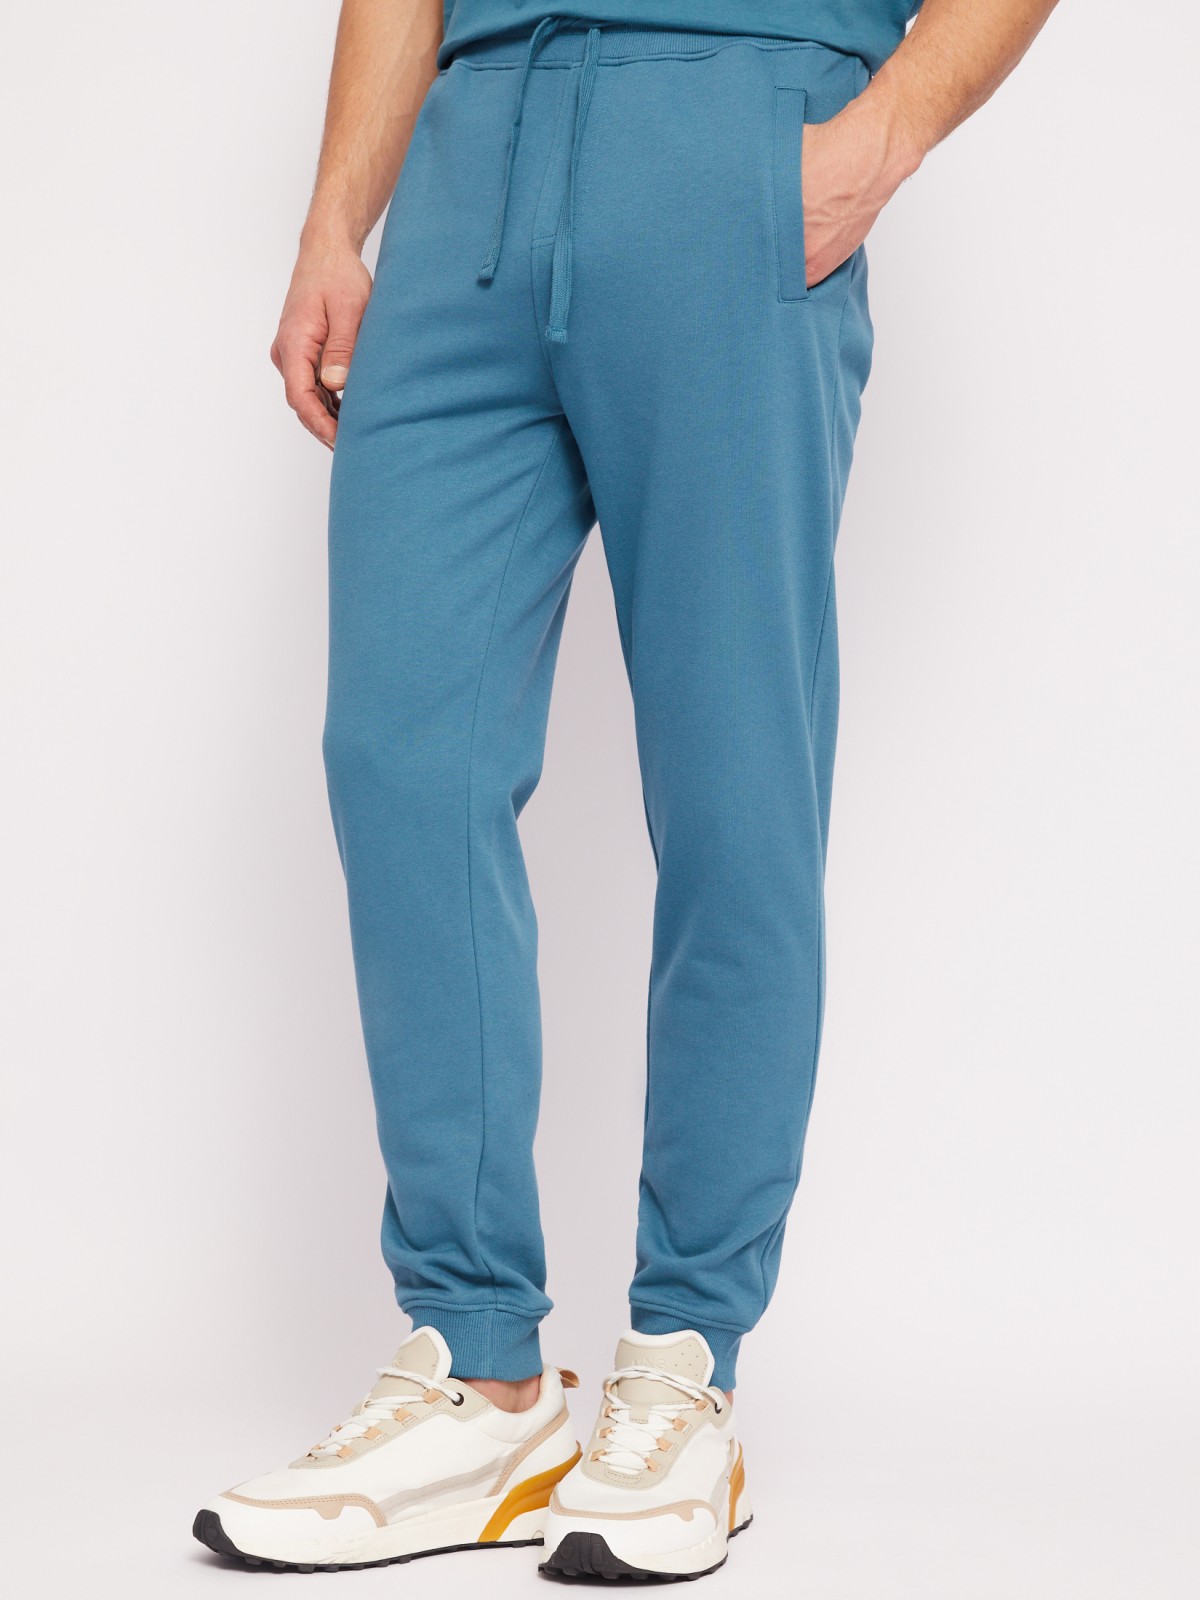 Трикотажные брюки-джоггеры в спортивном стиле zolla 014217675012, цвет бирюзовый, размер S - фото 3